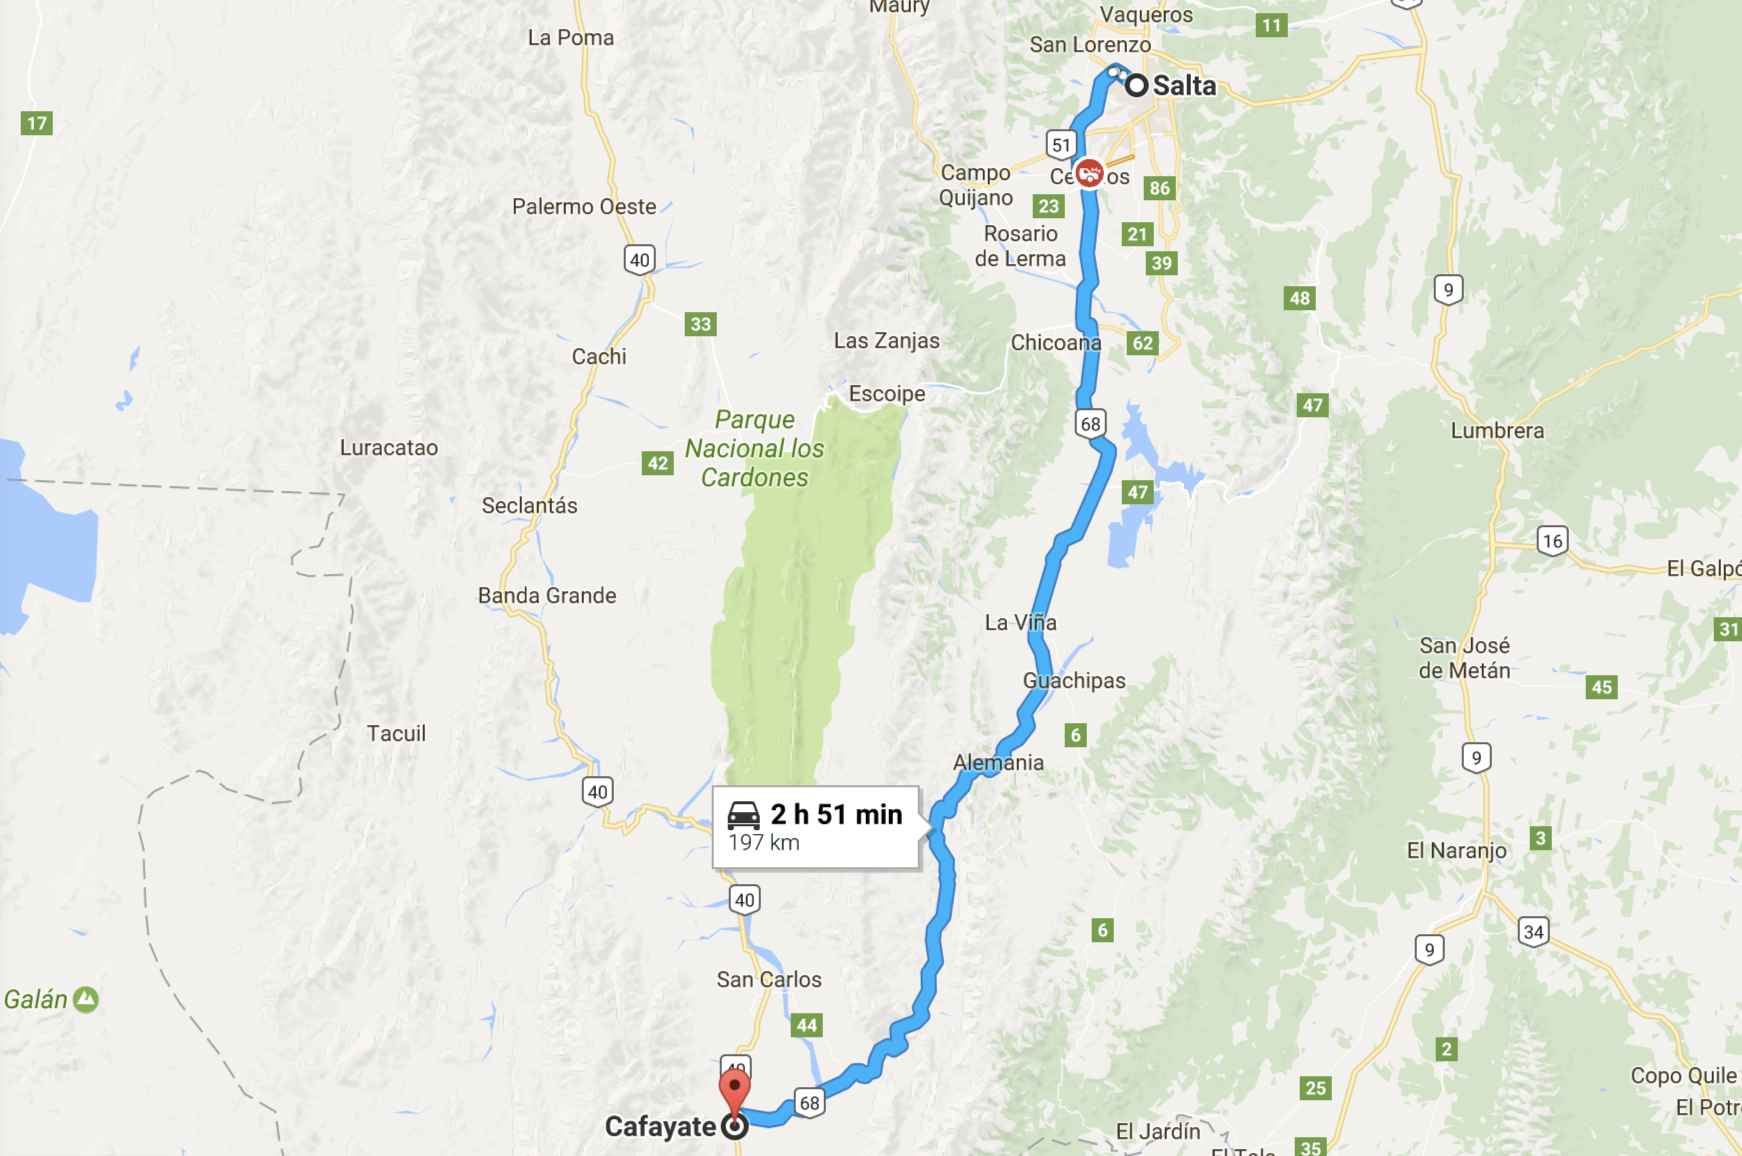 caminho no mapa: de salta a Cayate, no norte da argentina